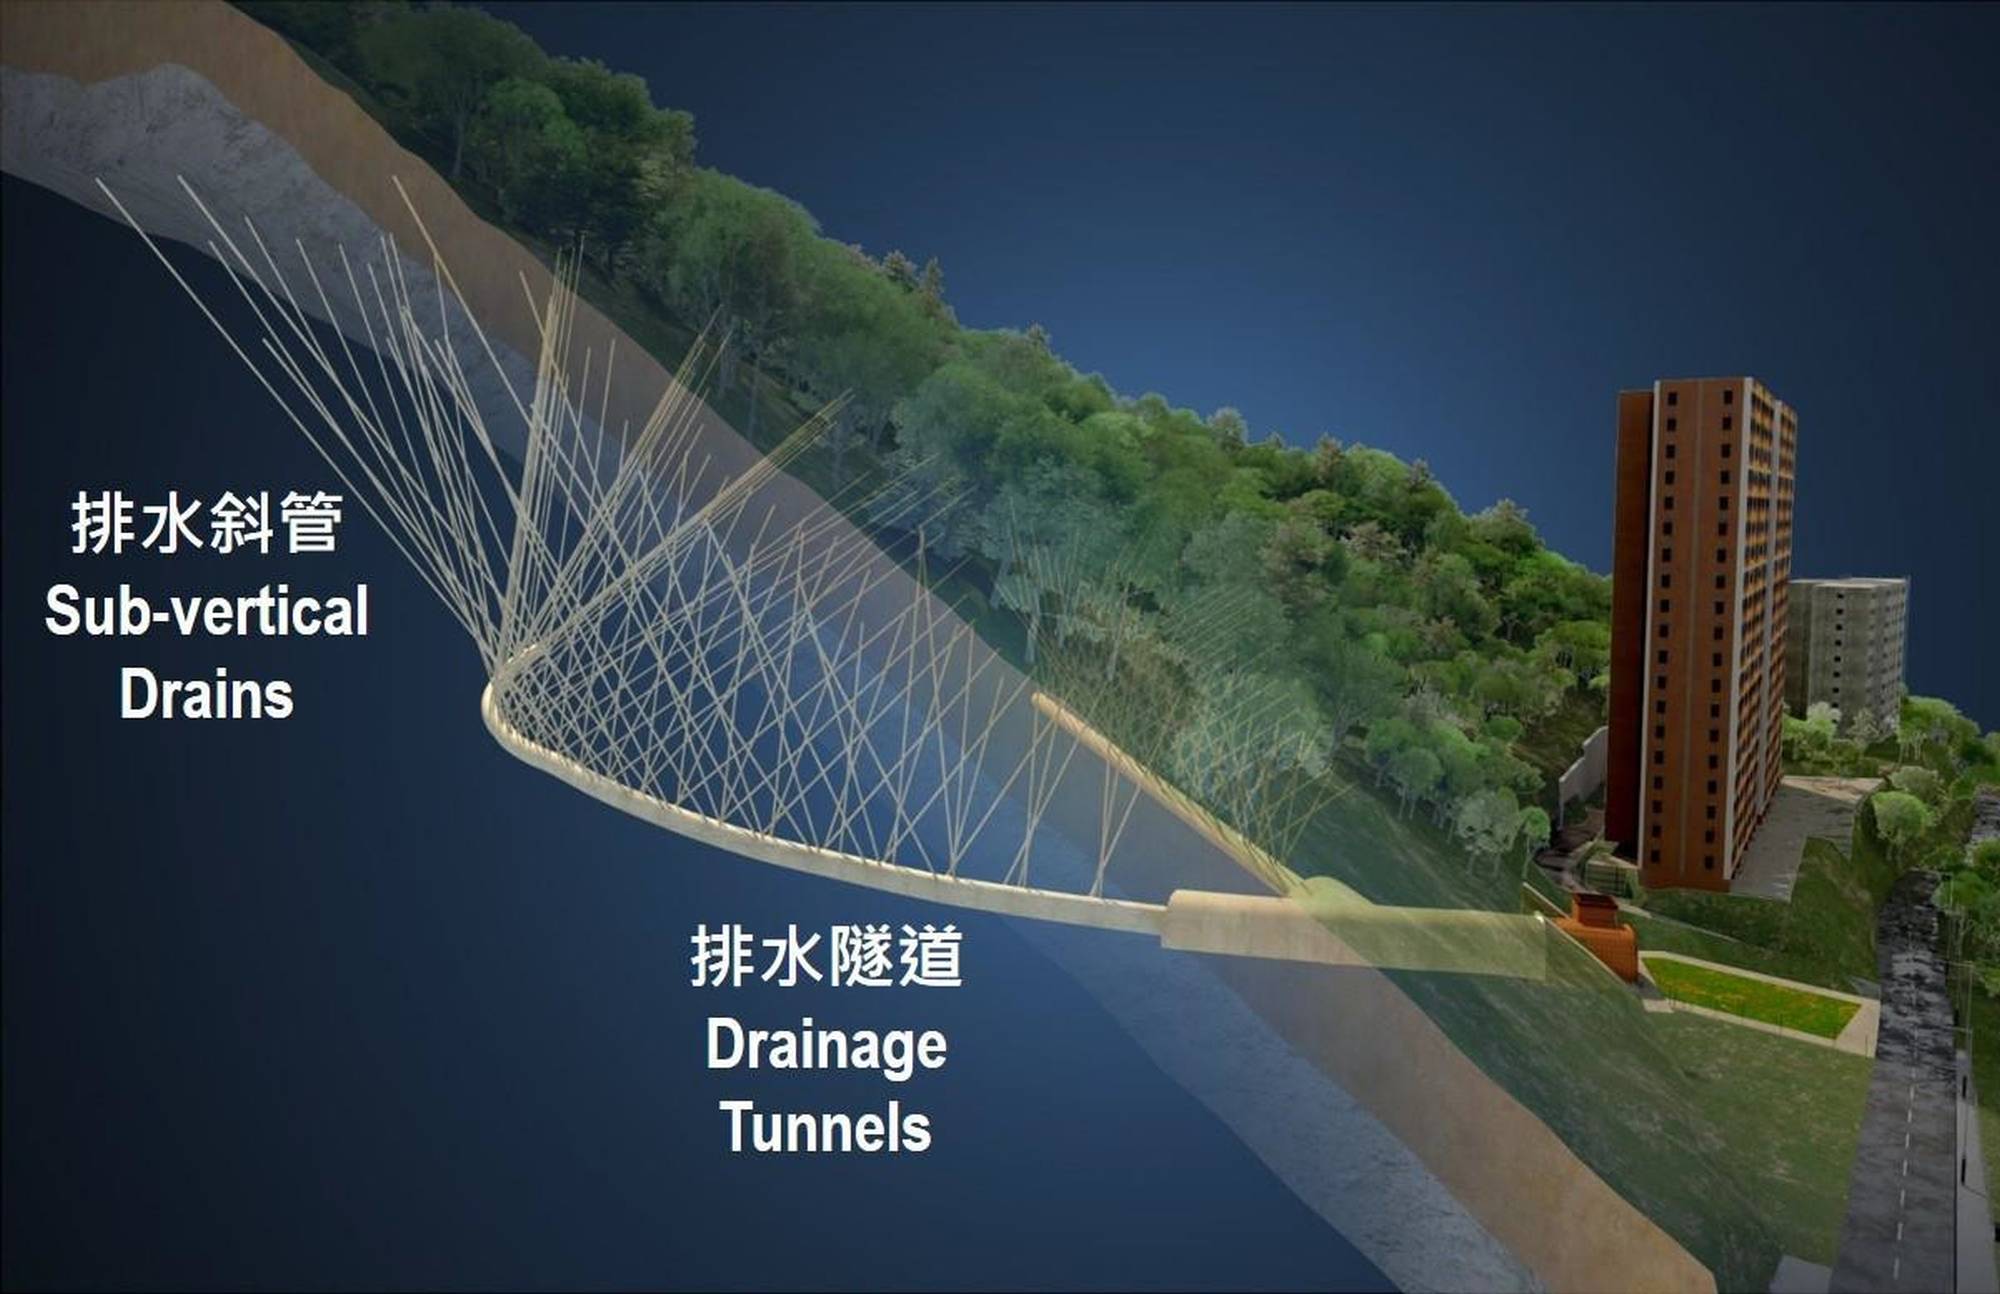 「寶珊排水隧道」由兩條排水隧道和172支排水斜管組成，並配有自動實時地下水監測系統，可調控寶珊地段的地下水位，從而減低發生大型山泥傾瀉的風險。